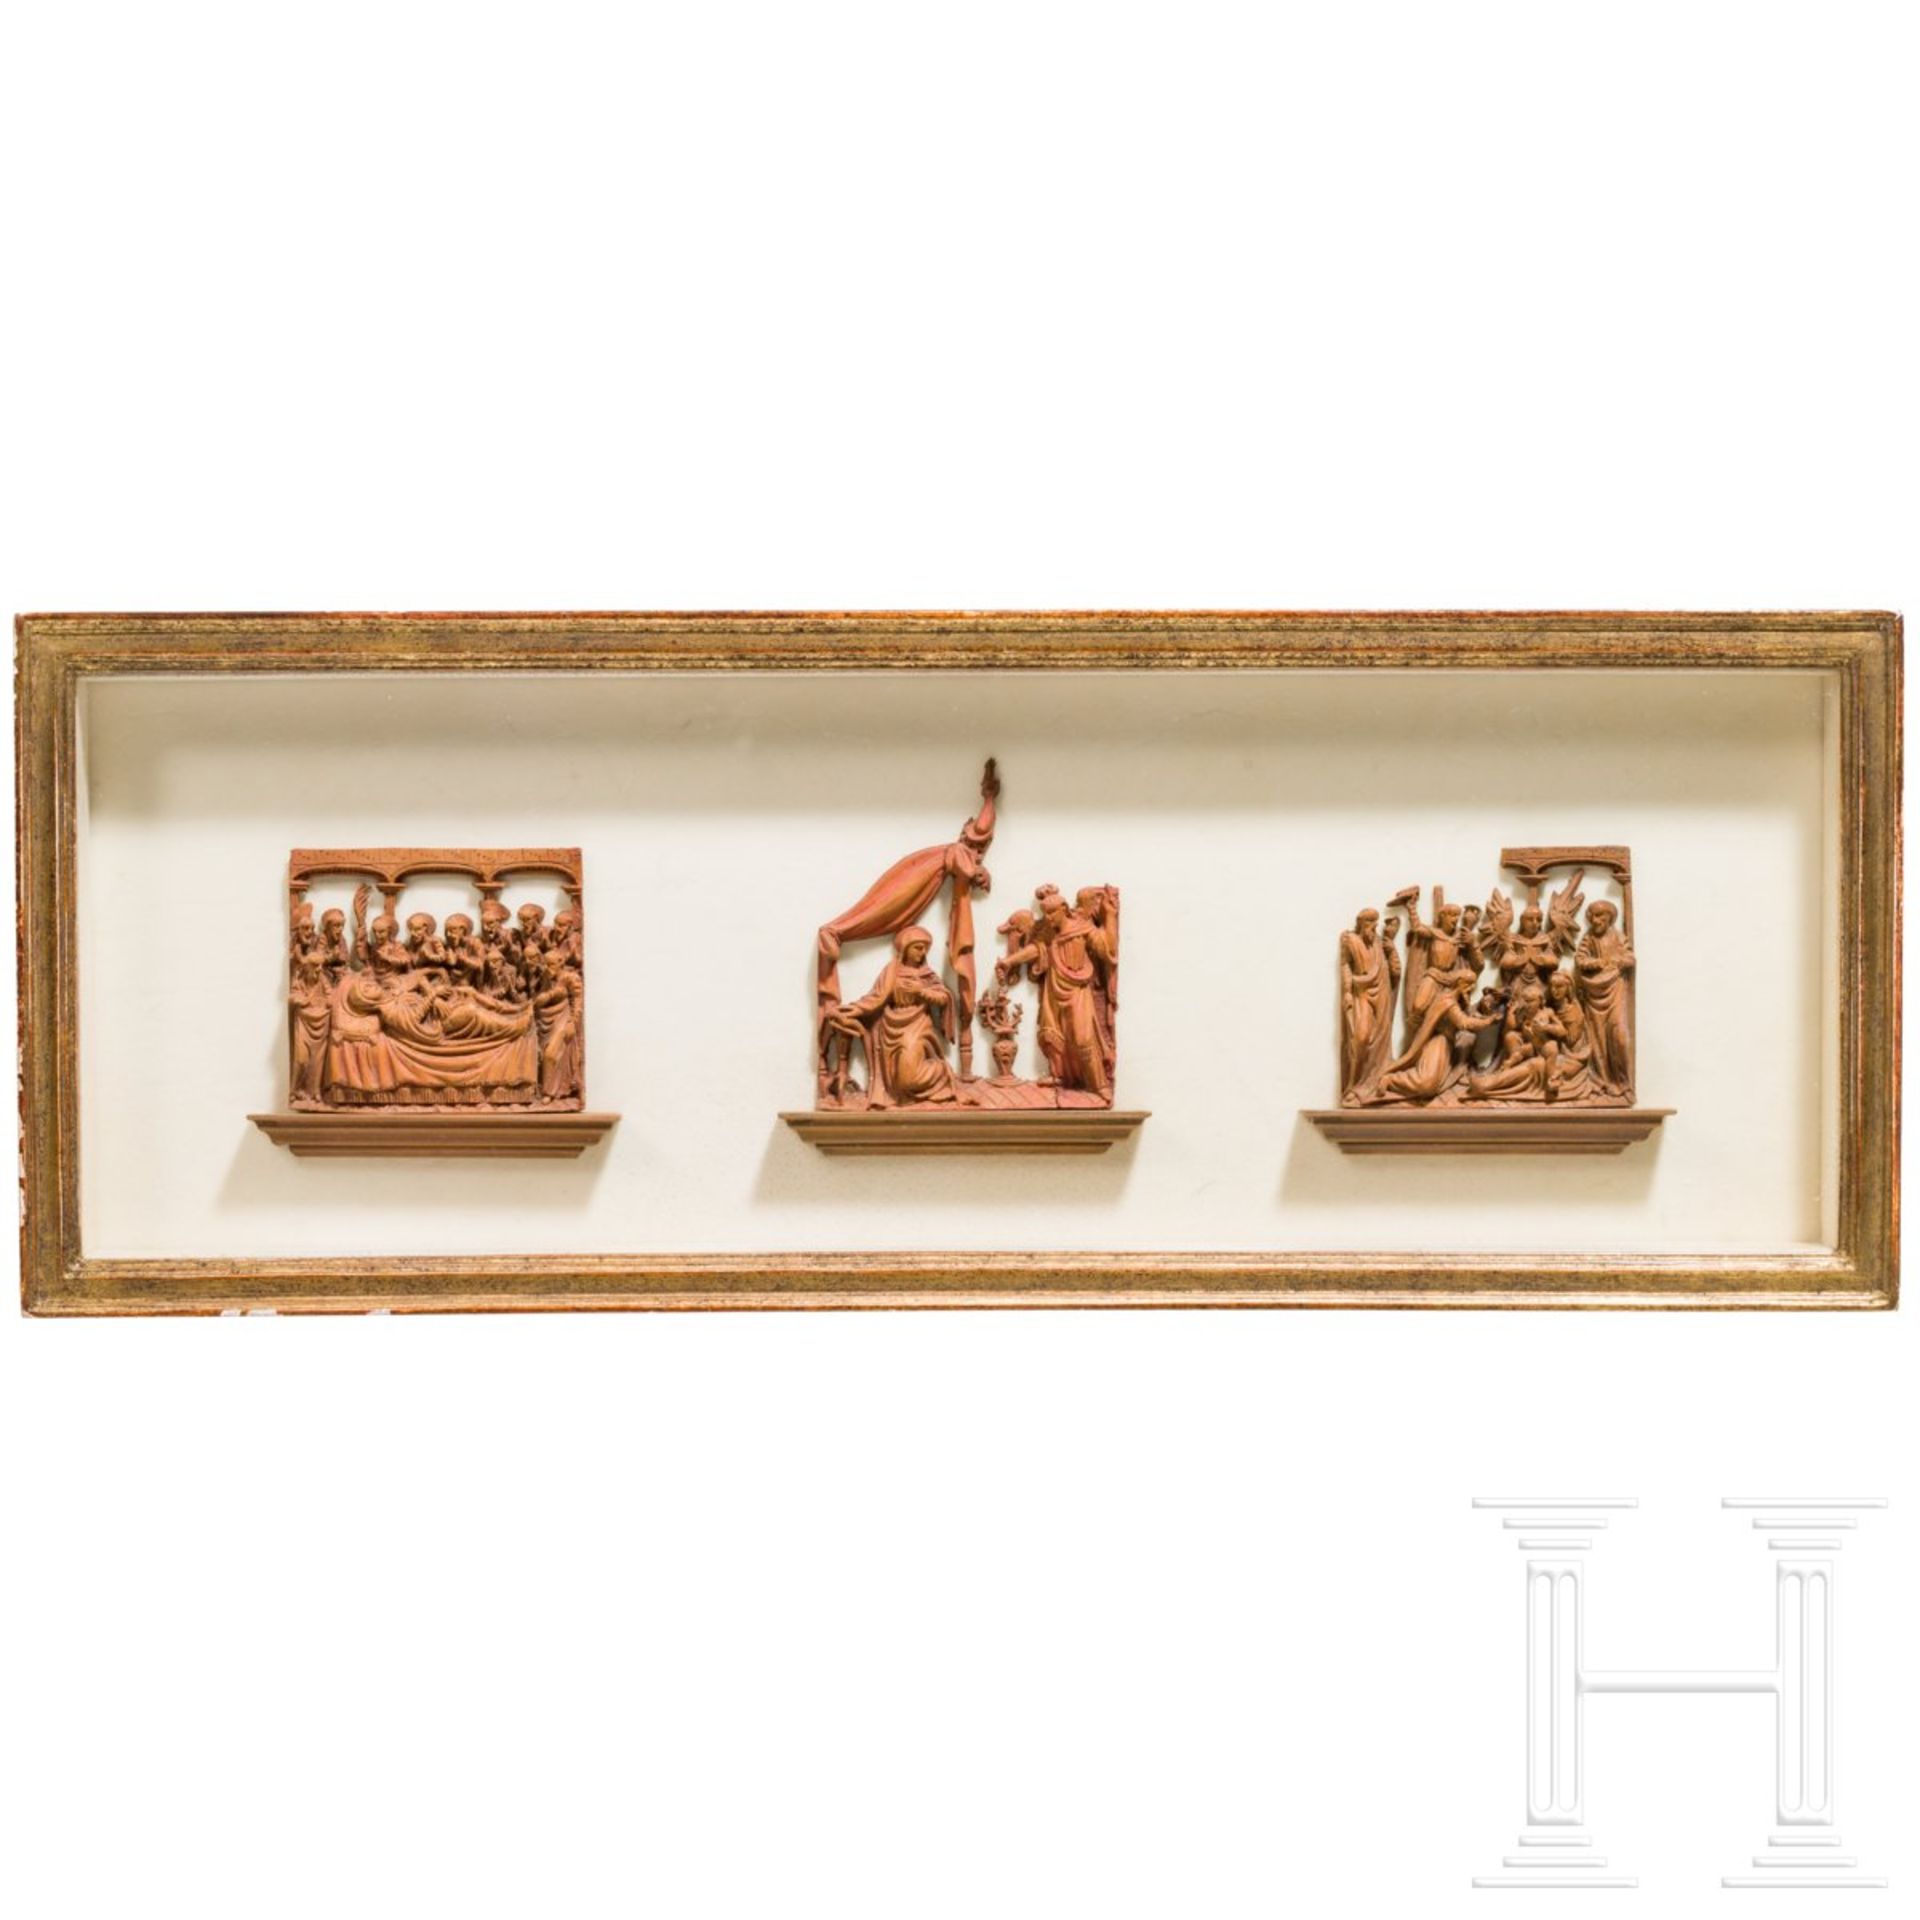 Drei Mikroschnitzereien mit Darstellungen aus dem Marienleben, flämisch/Frankreich, um